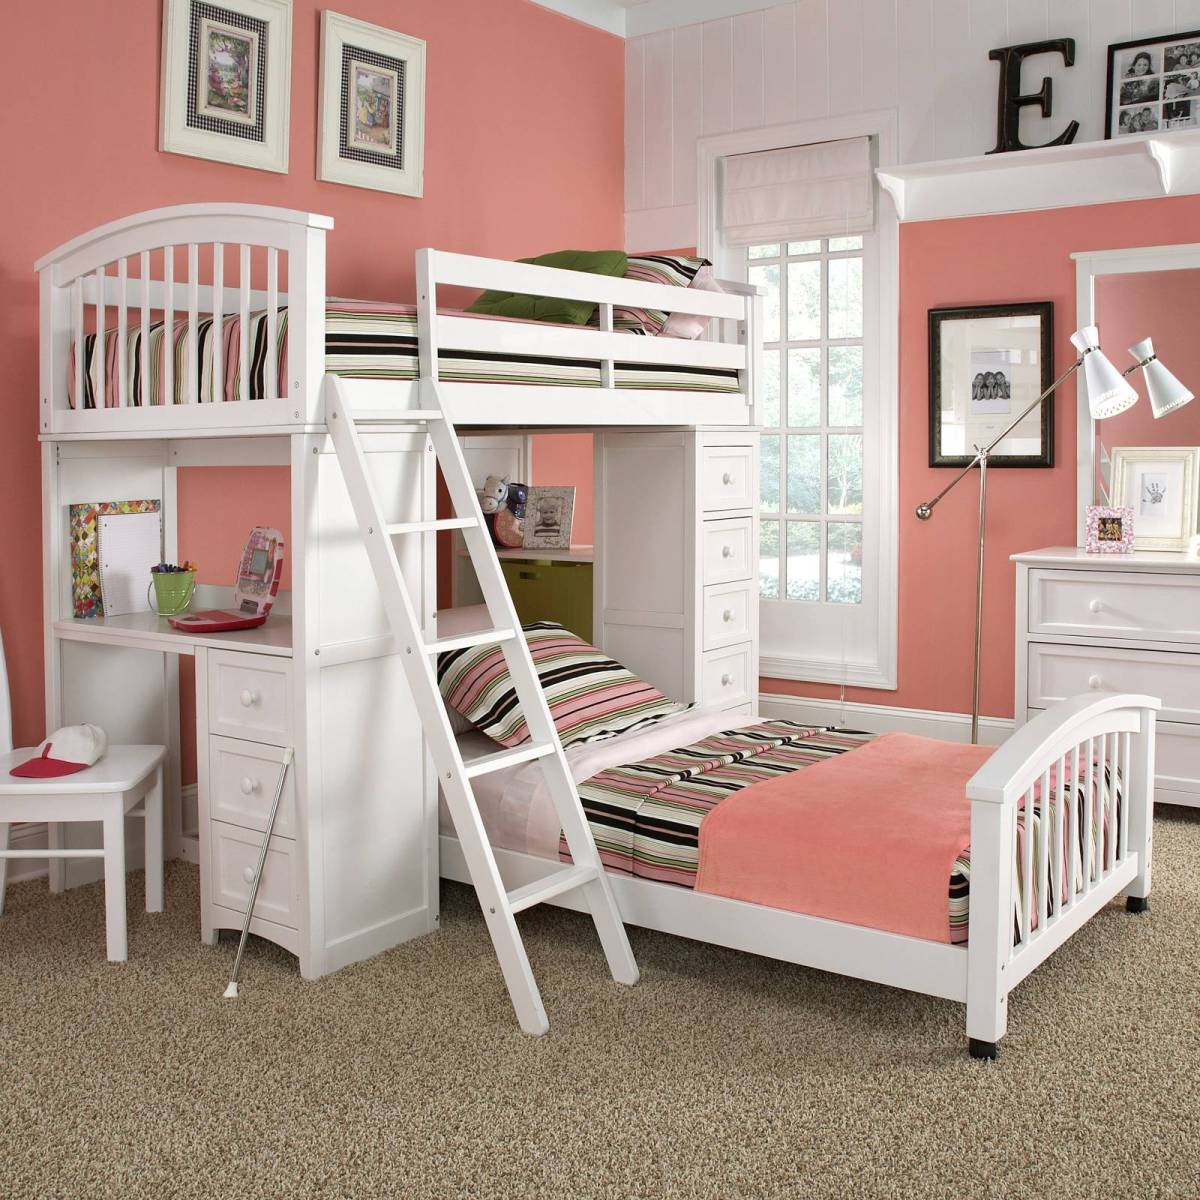 girls-bedroom-teen-girl-bedroom-color-schemes-with-girl-baby-bedroom-themes-bedroom-picture-teen-bedroom-themes